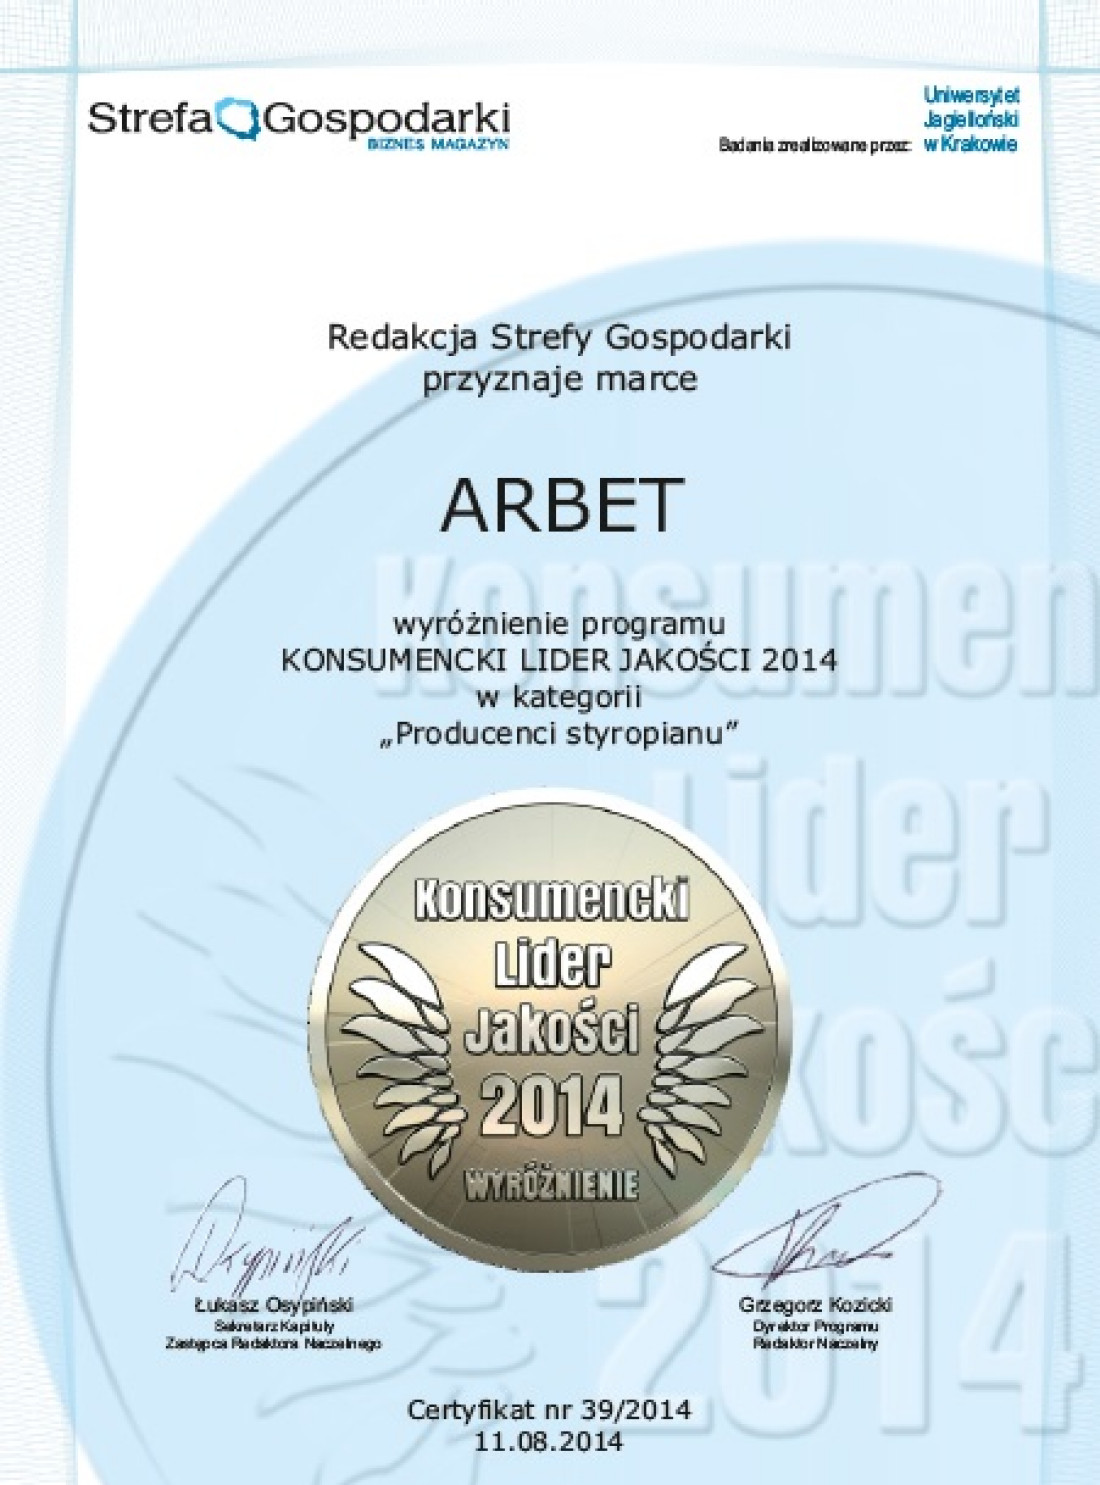 ARBET wyróżniony w konkursie "Konsumencki Lider Jakości 2014"